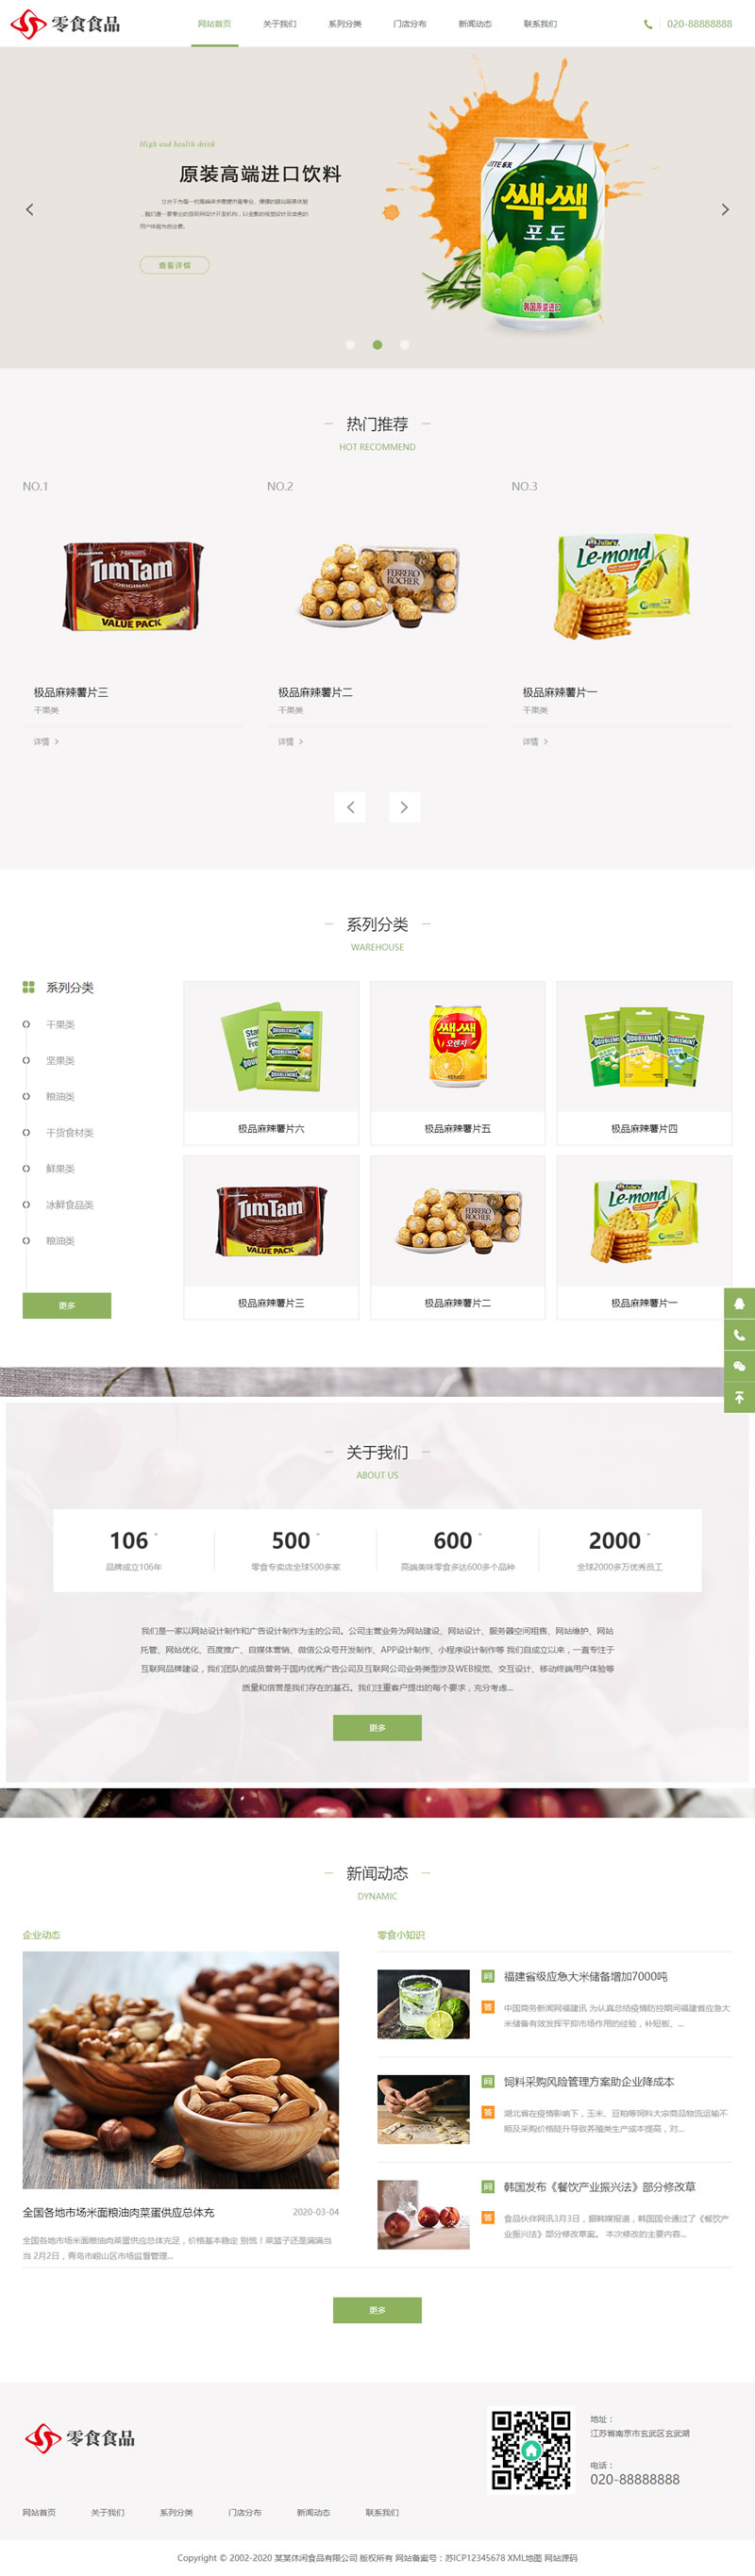 H5日化食品零食类网站源码 HTML5零食连锁加盟店织梦模板程序简介-学习笔记-橙子系统站